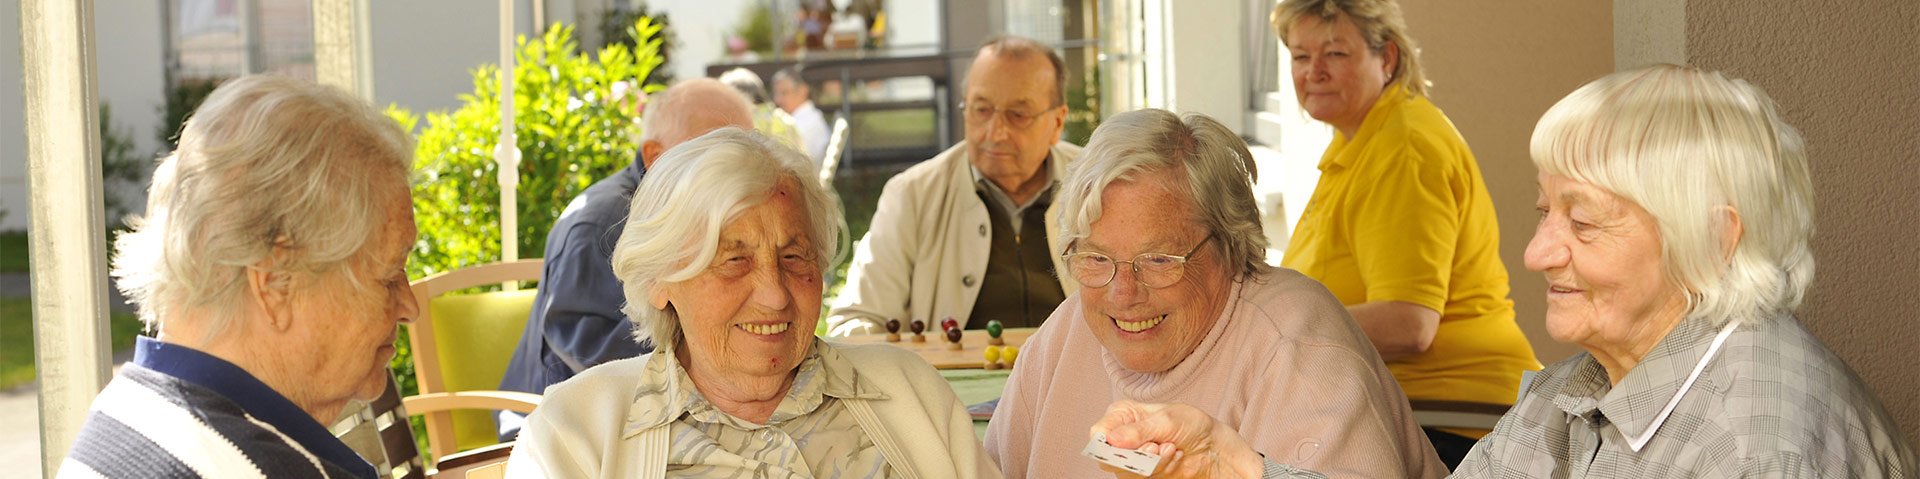 Senioren sitzen an einem Tisch zusammen